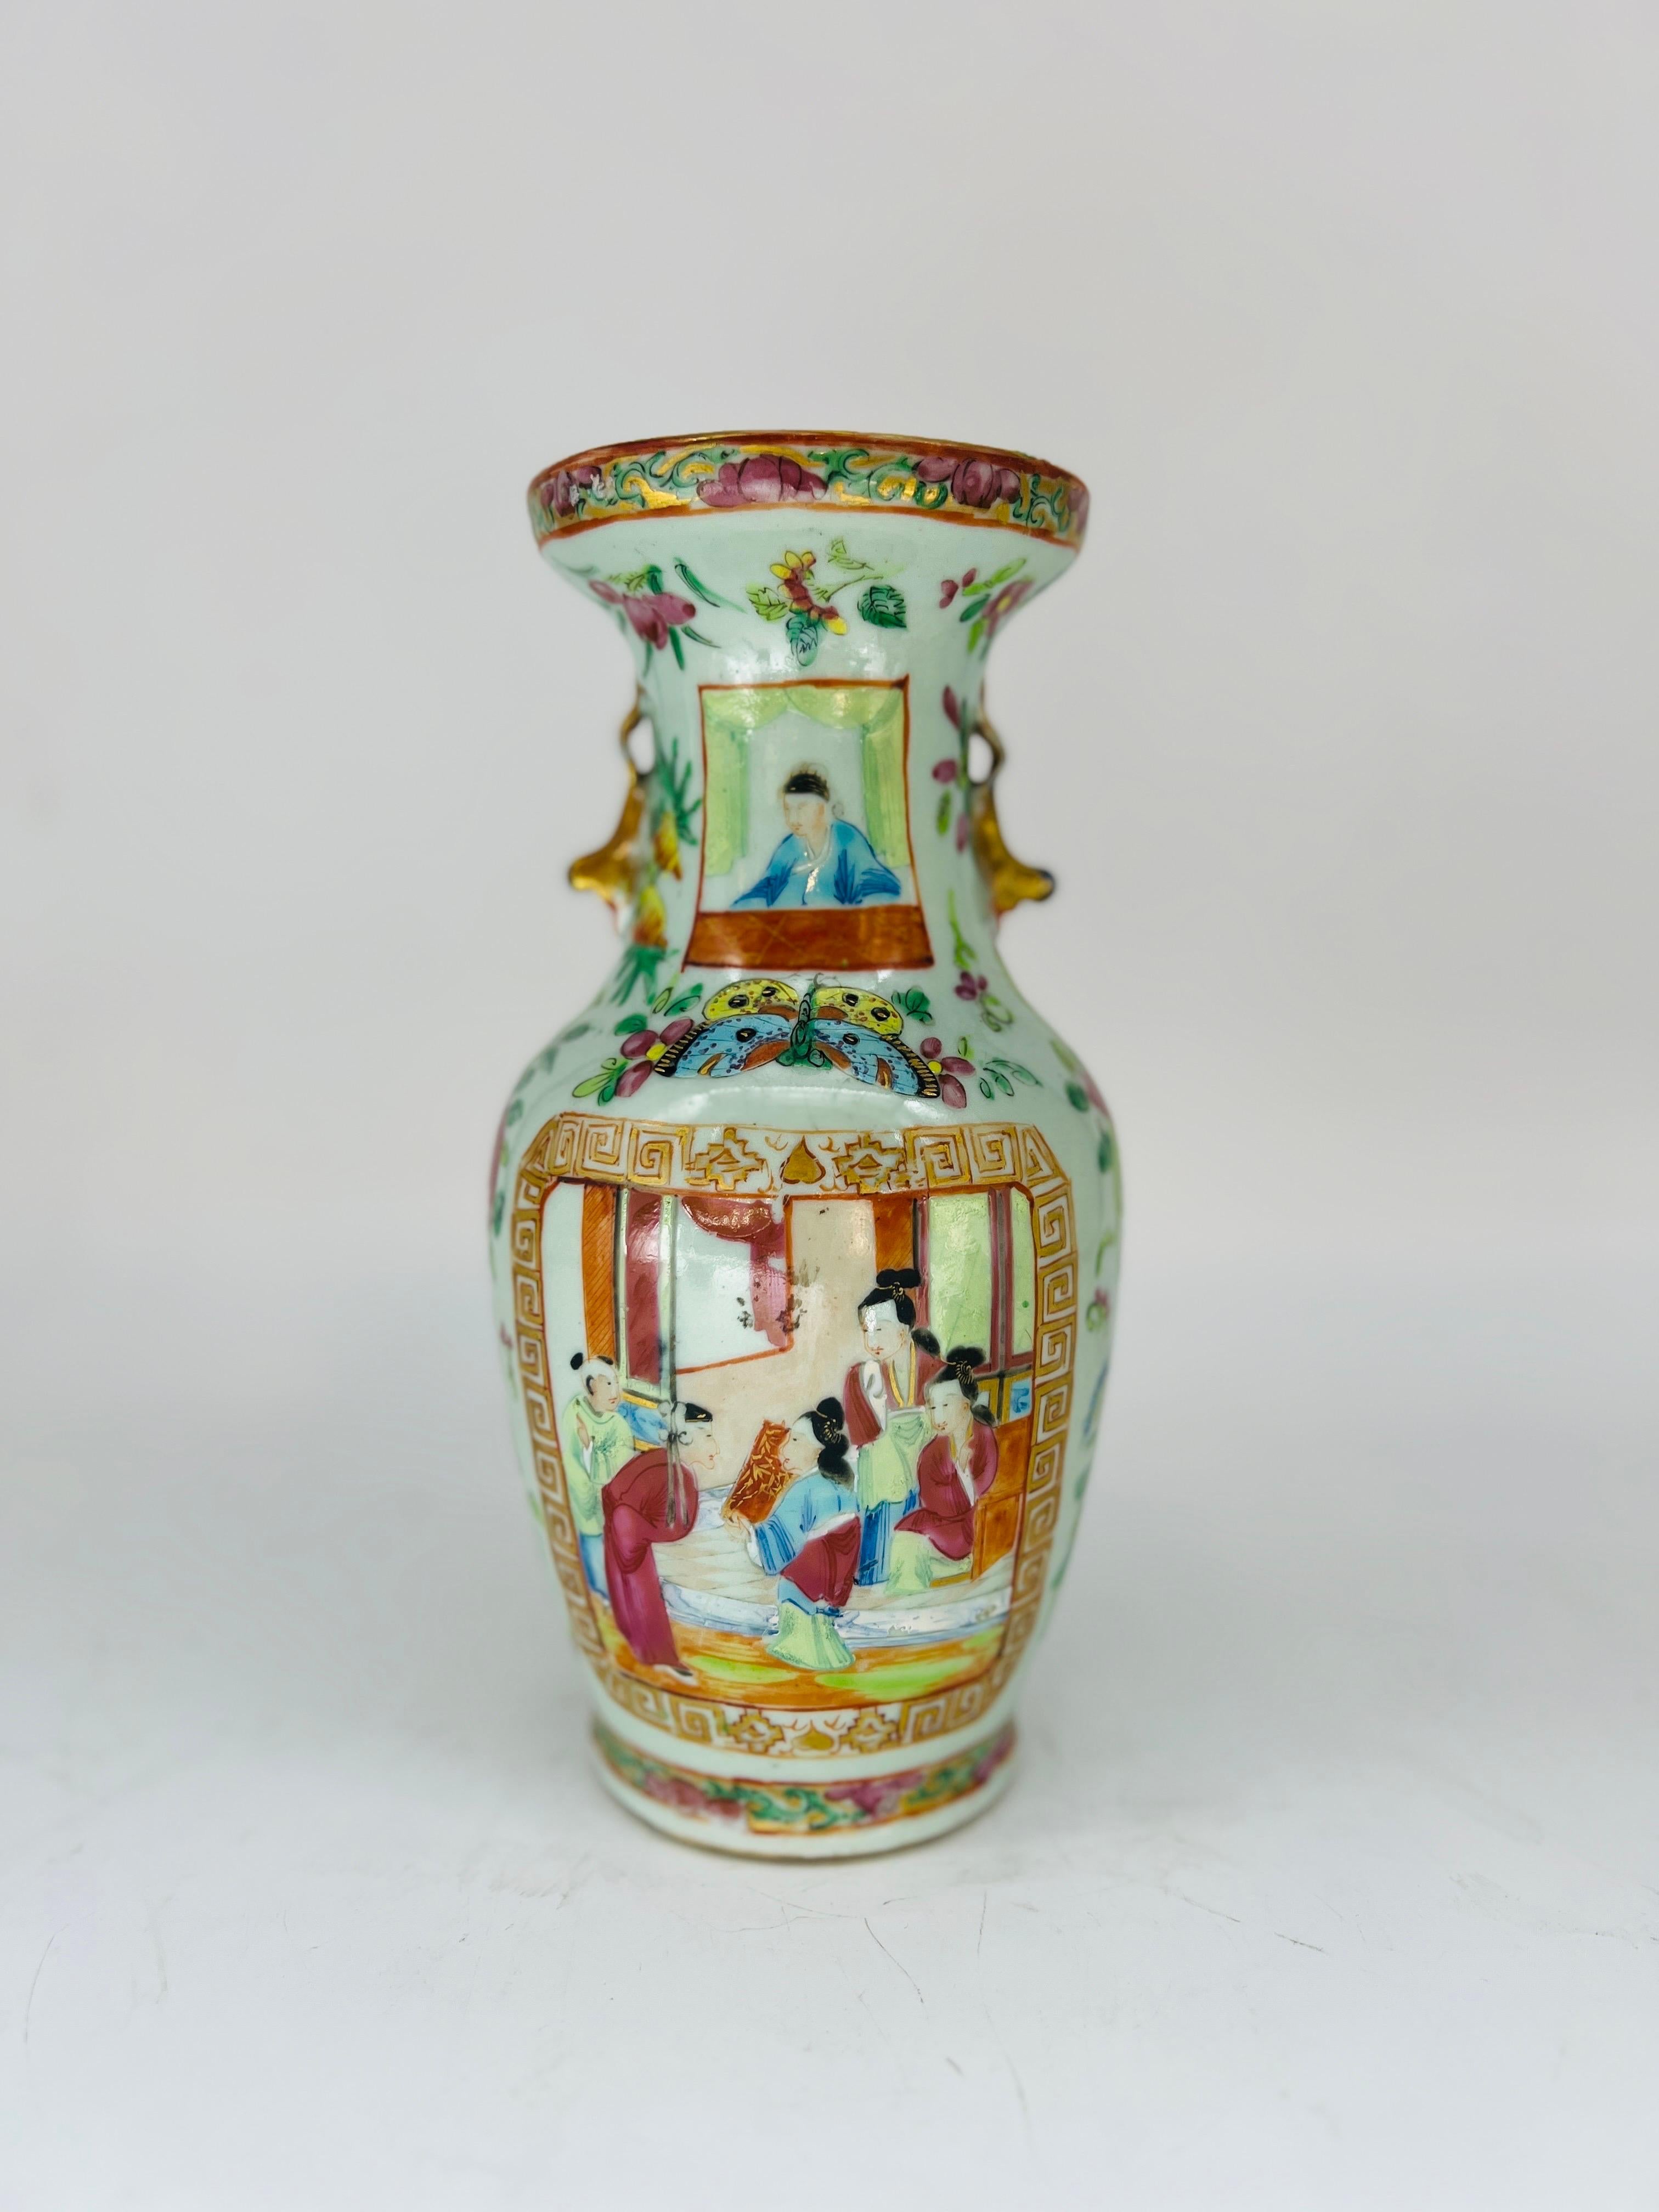 Chinois, 19e siècle.

Voici un vase chinois très inhabituel de forme traditionnelle, à glaçure céladon sur le corps et décoré du populaire motif de médaillon de la famille rose. L'un des côtés est orné d'une fenêtre représentant un vieillard figuré